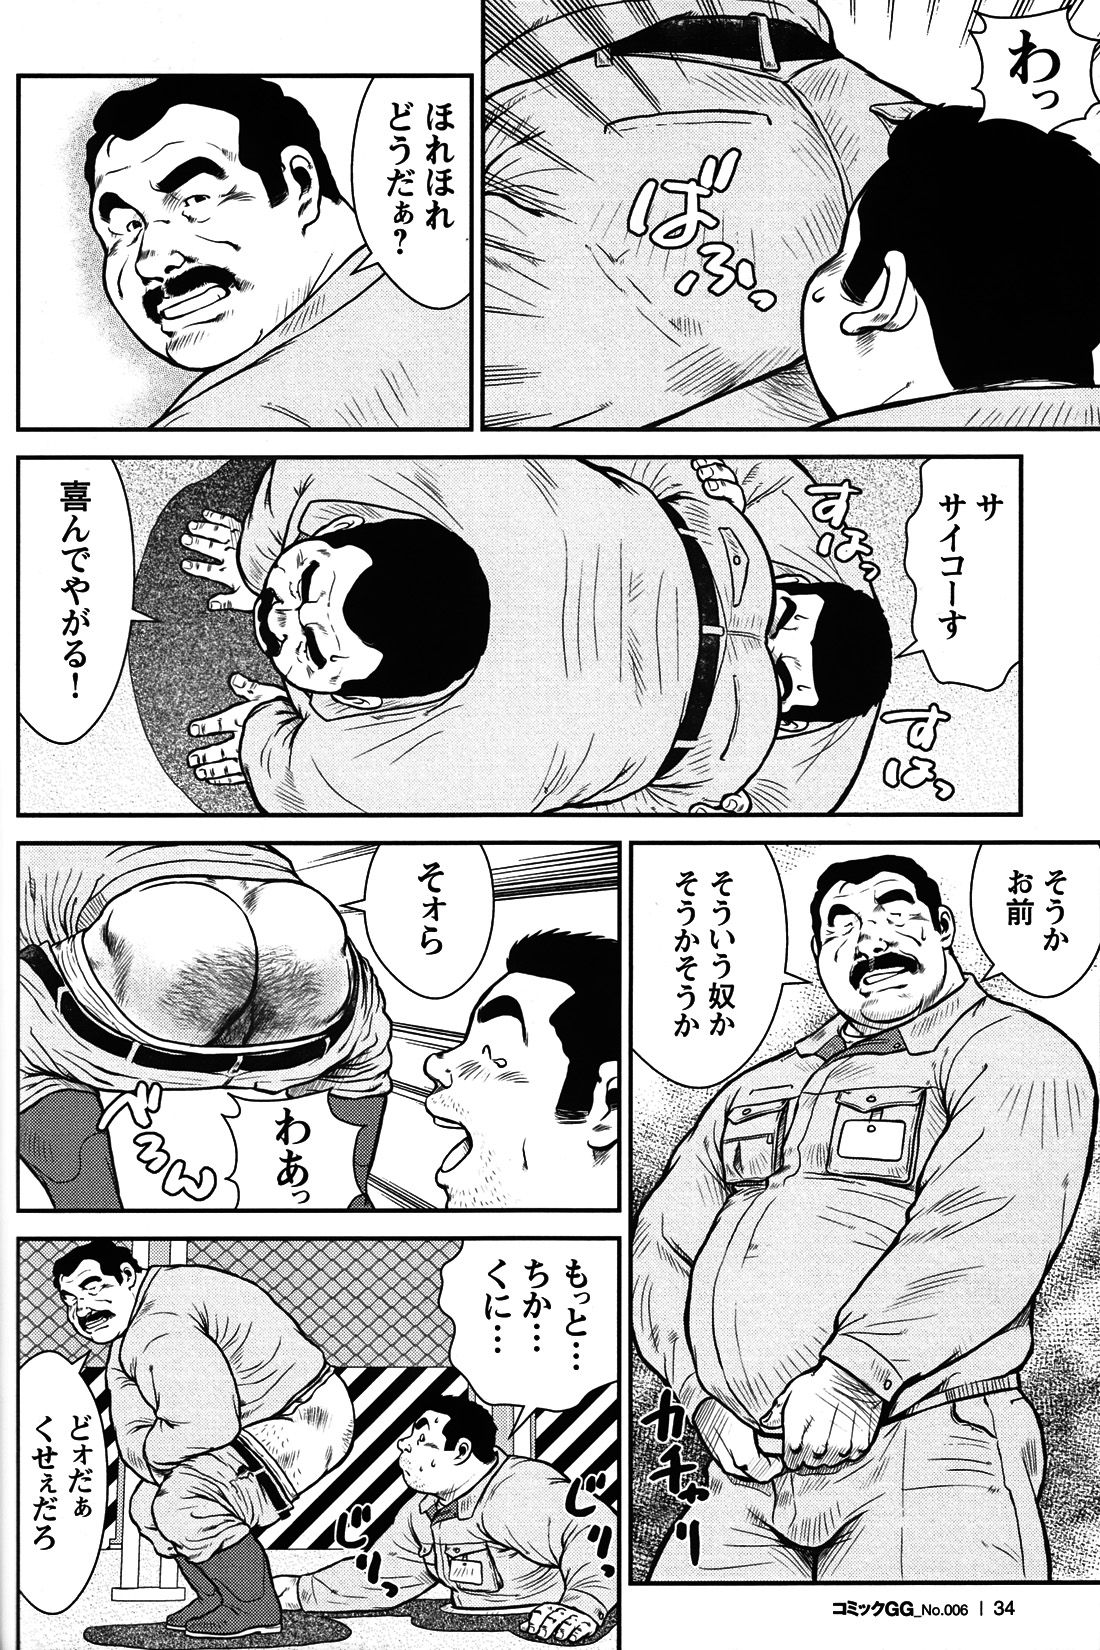 Comic G-men Gaho No. 06 Nikutai Roudousha page 31 full